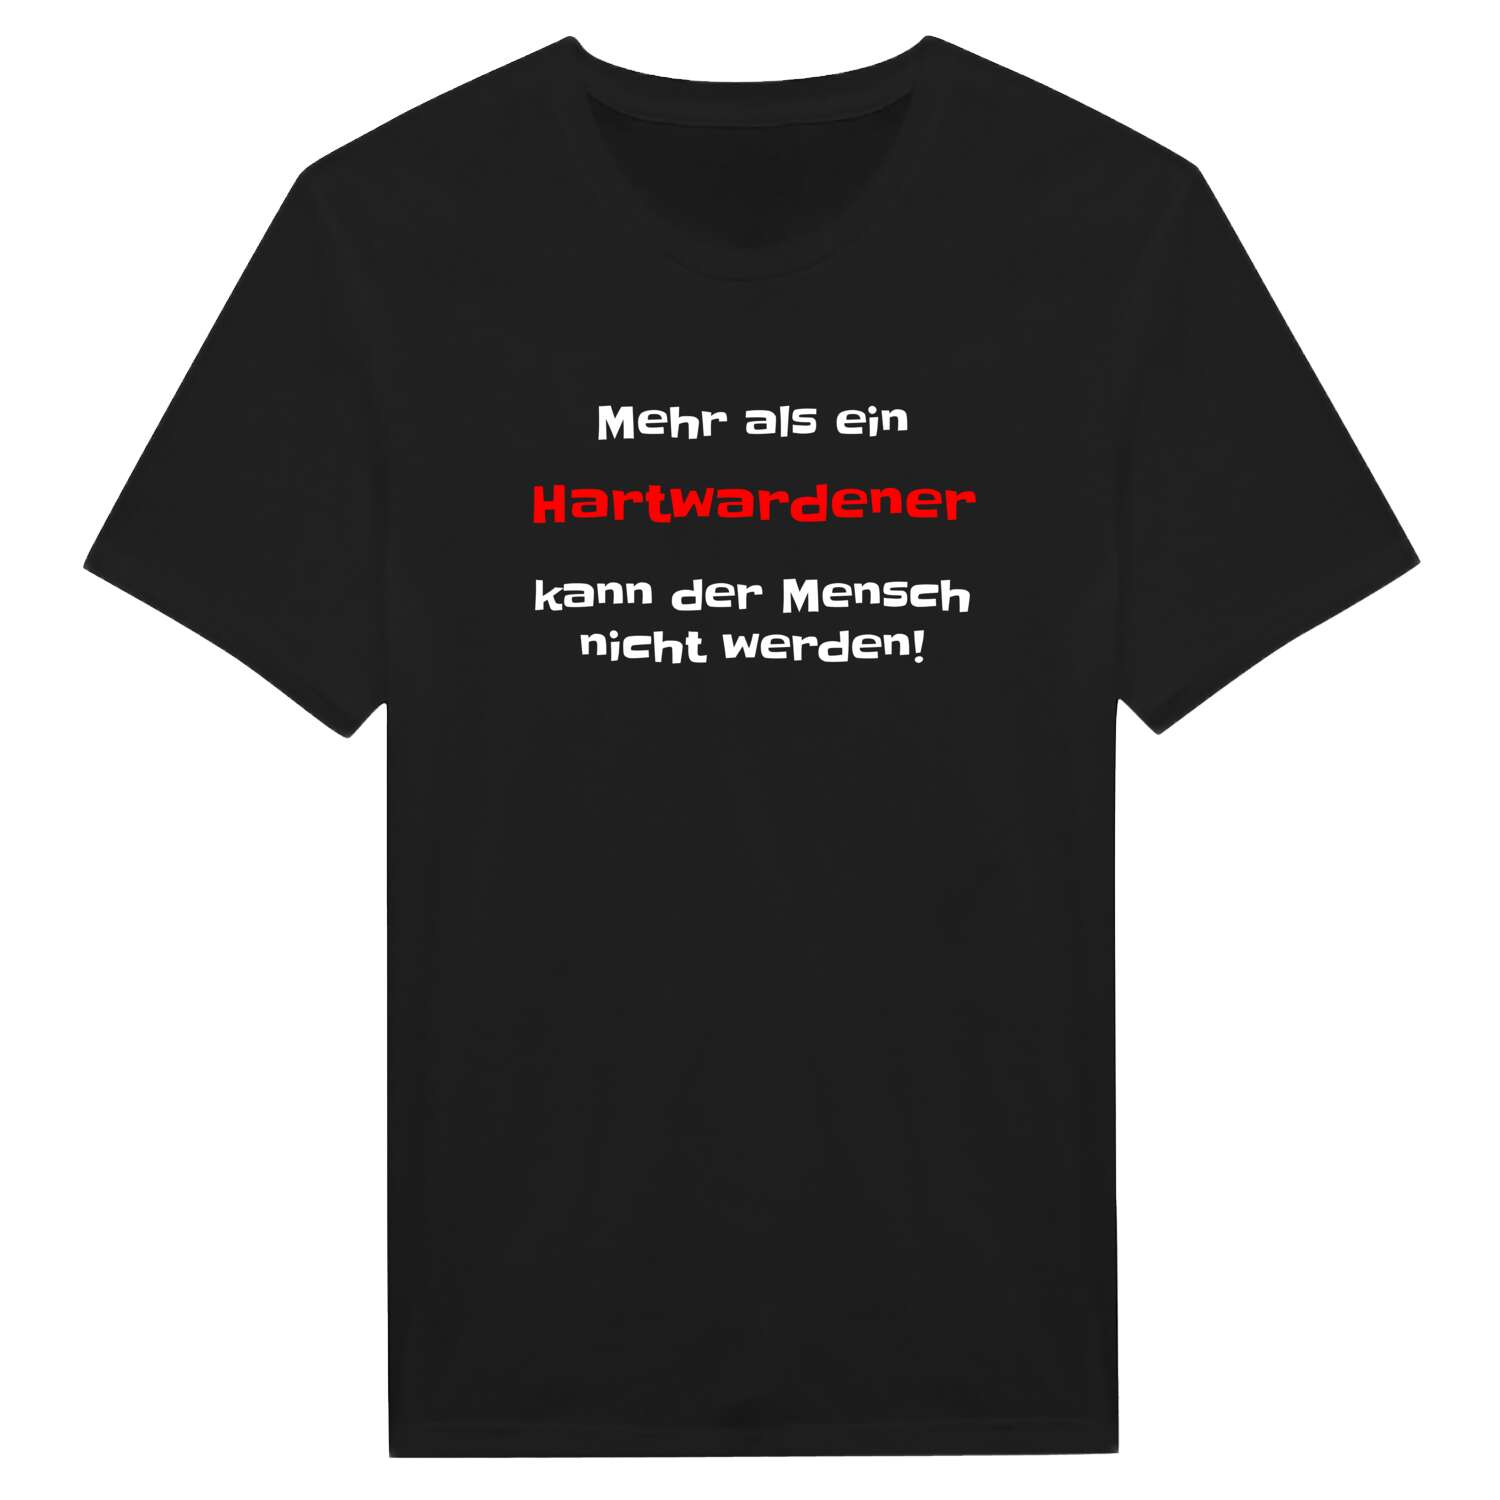 Hartwarden T-Shirt »Mehr als ein«